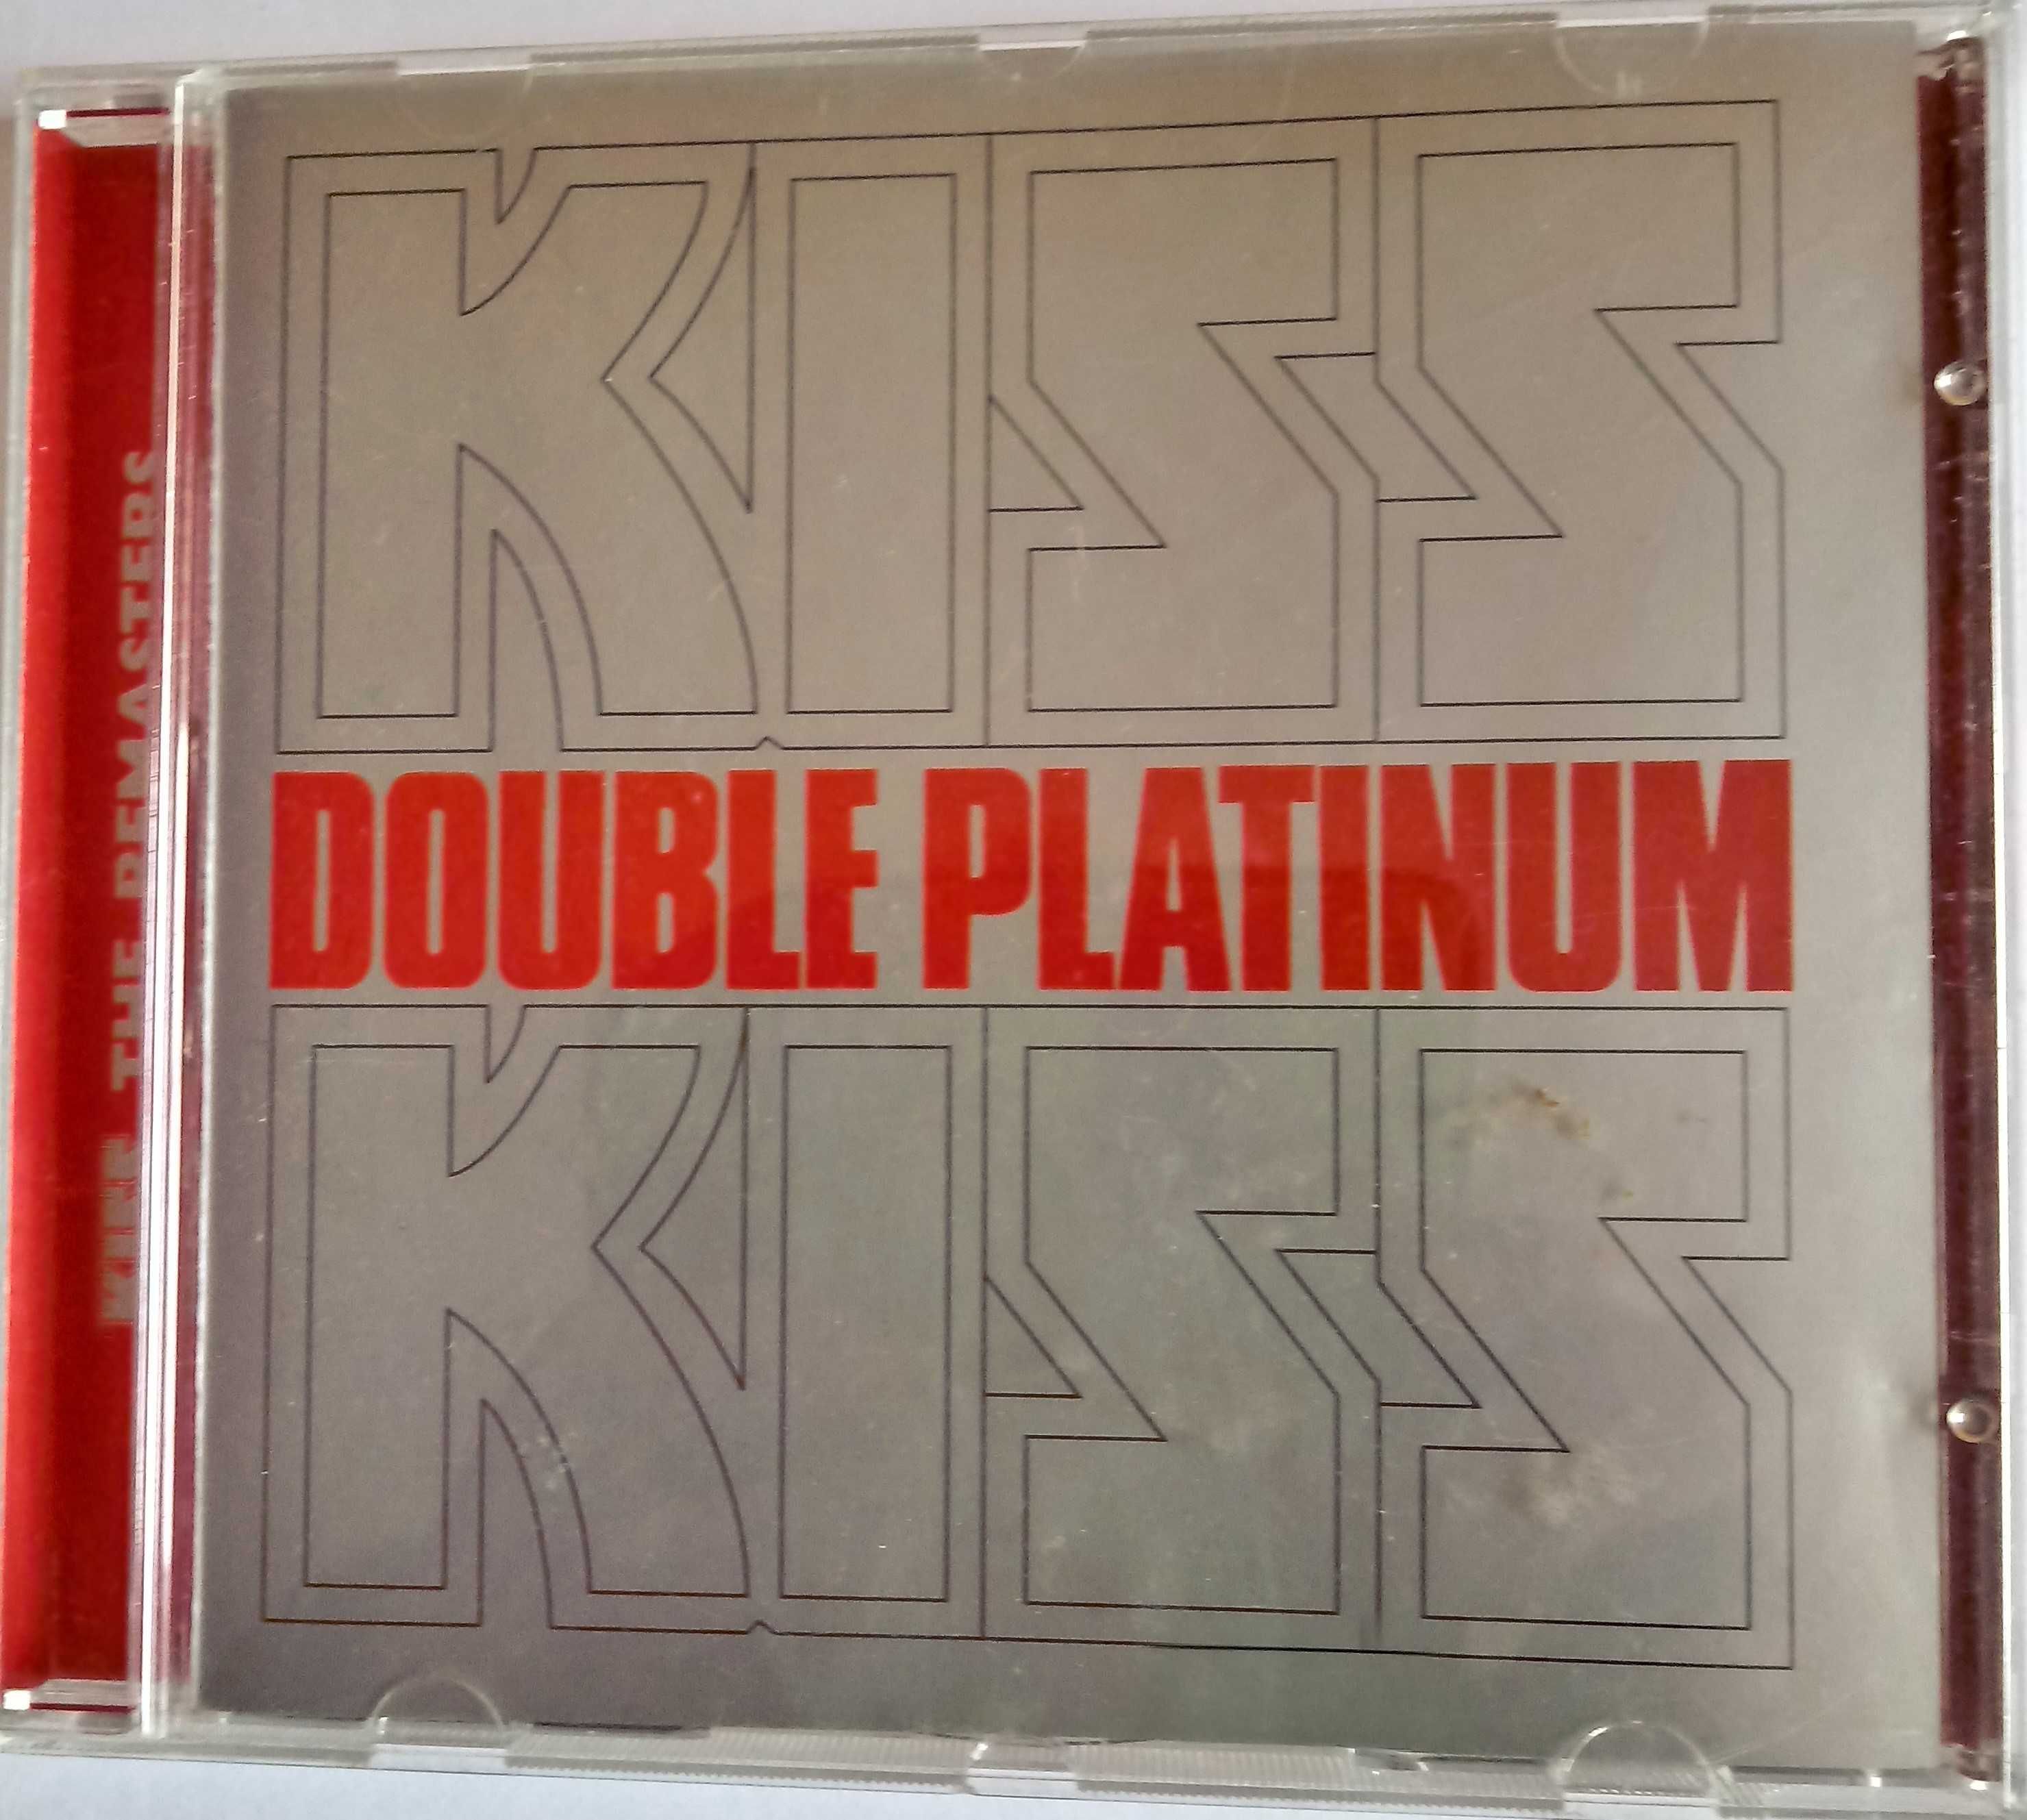 kiss/aerotsmith płyty cd